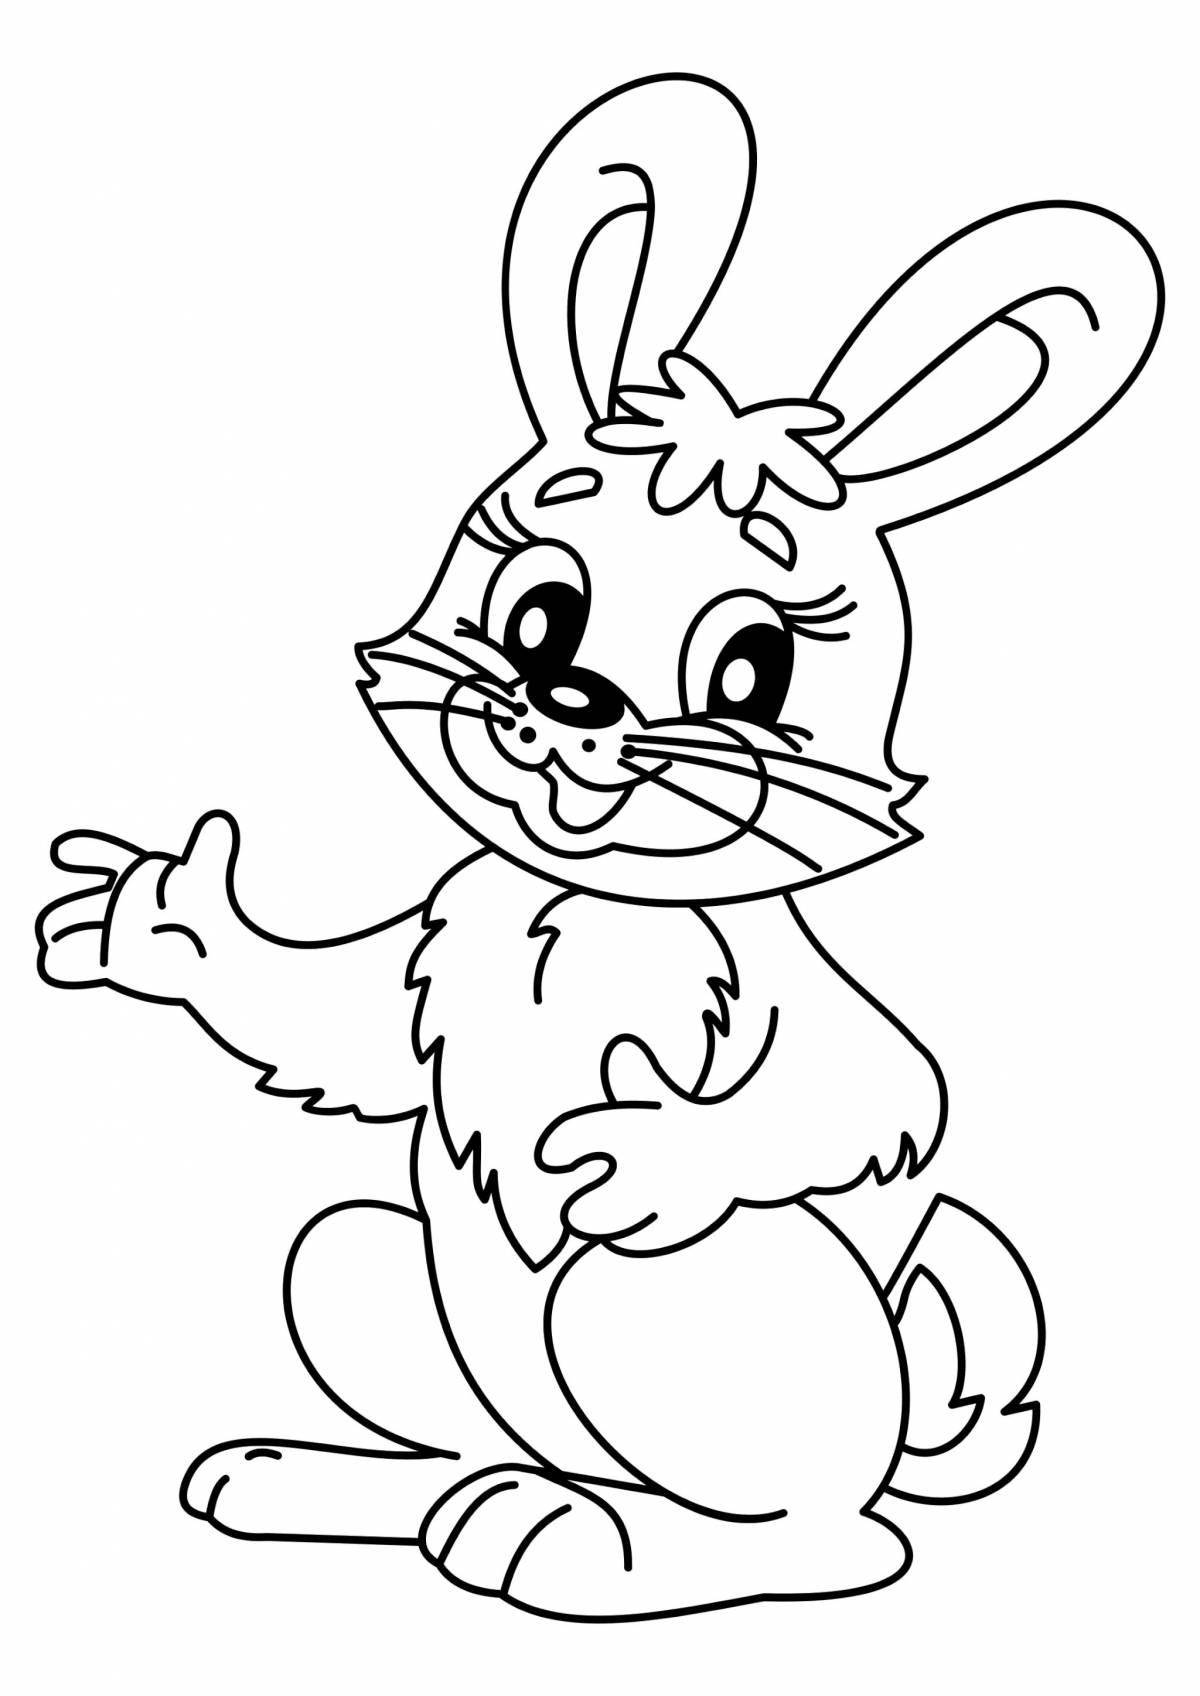 Рисунок радостного зайца